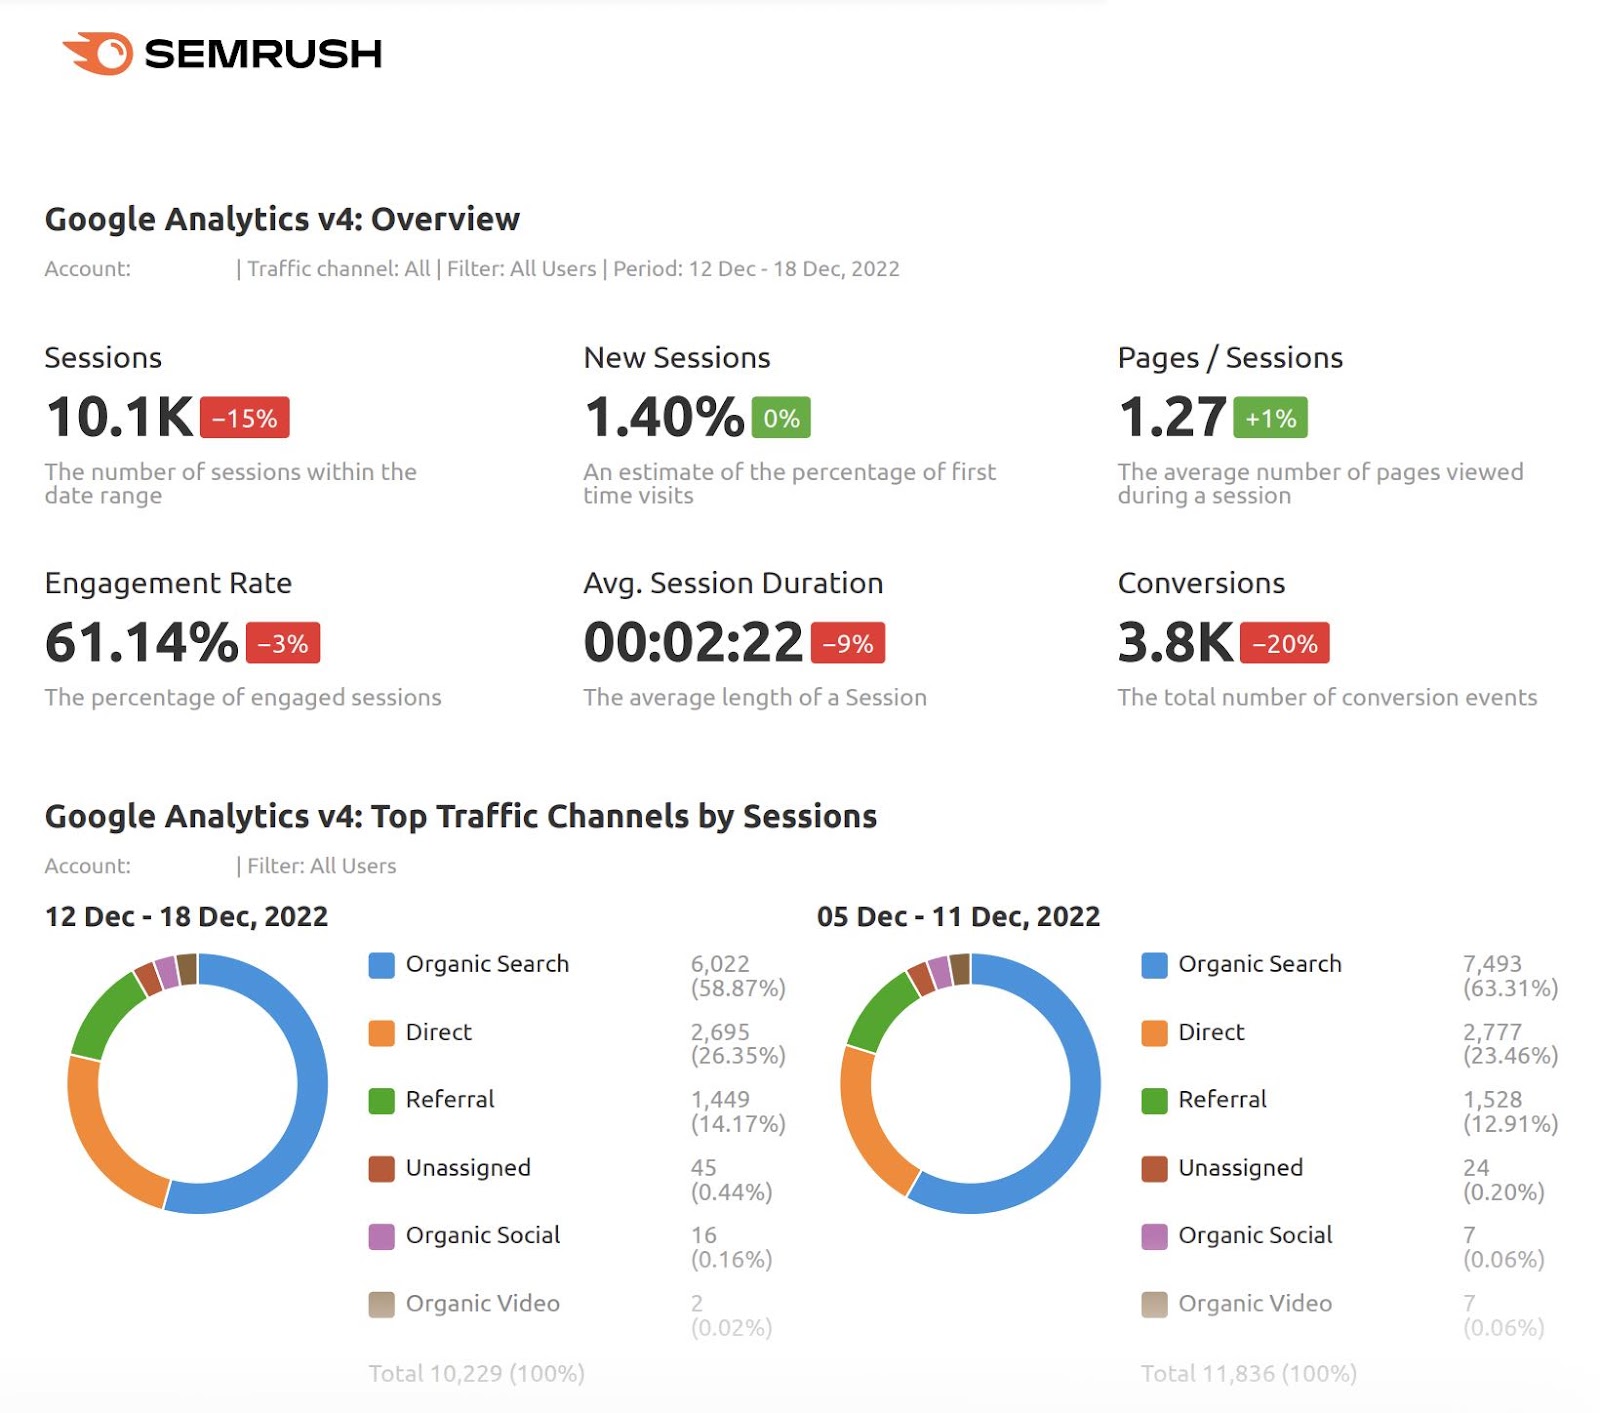 Google Analytics overview dashboard